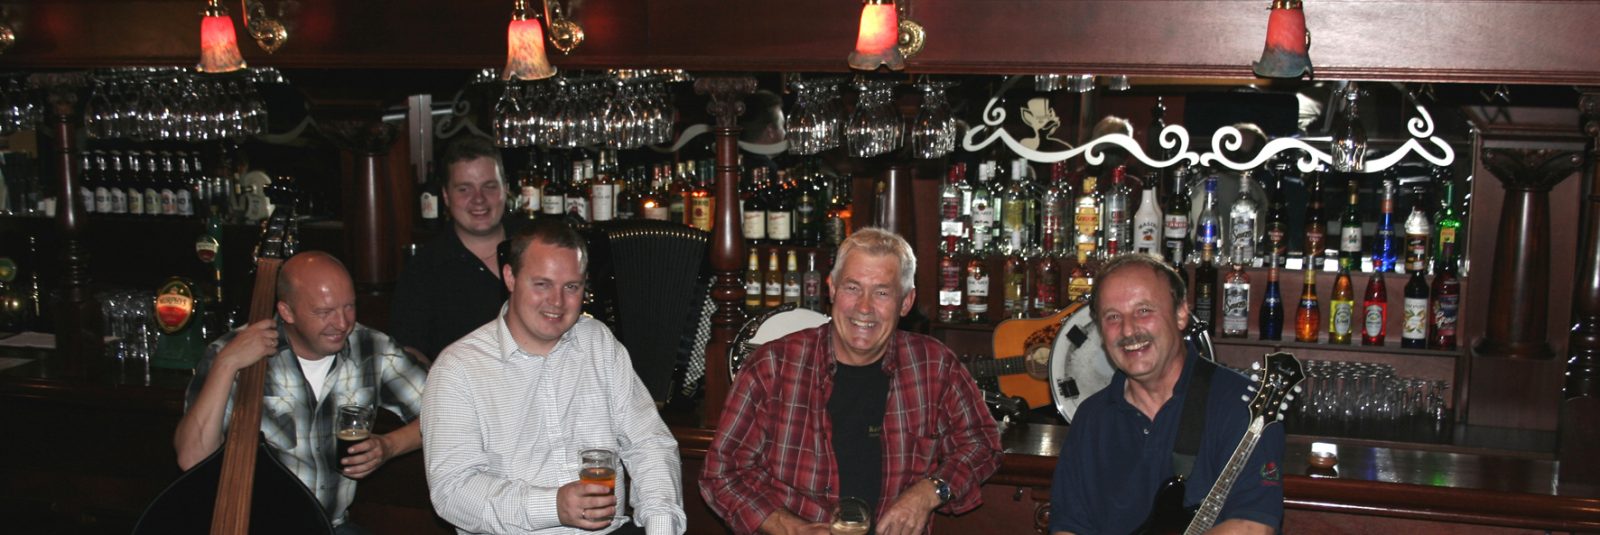 Fjordfolk fem mand i bar - coverbillede